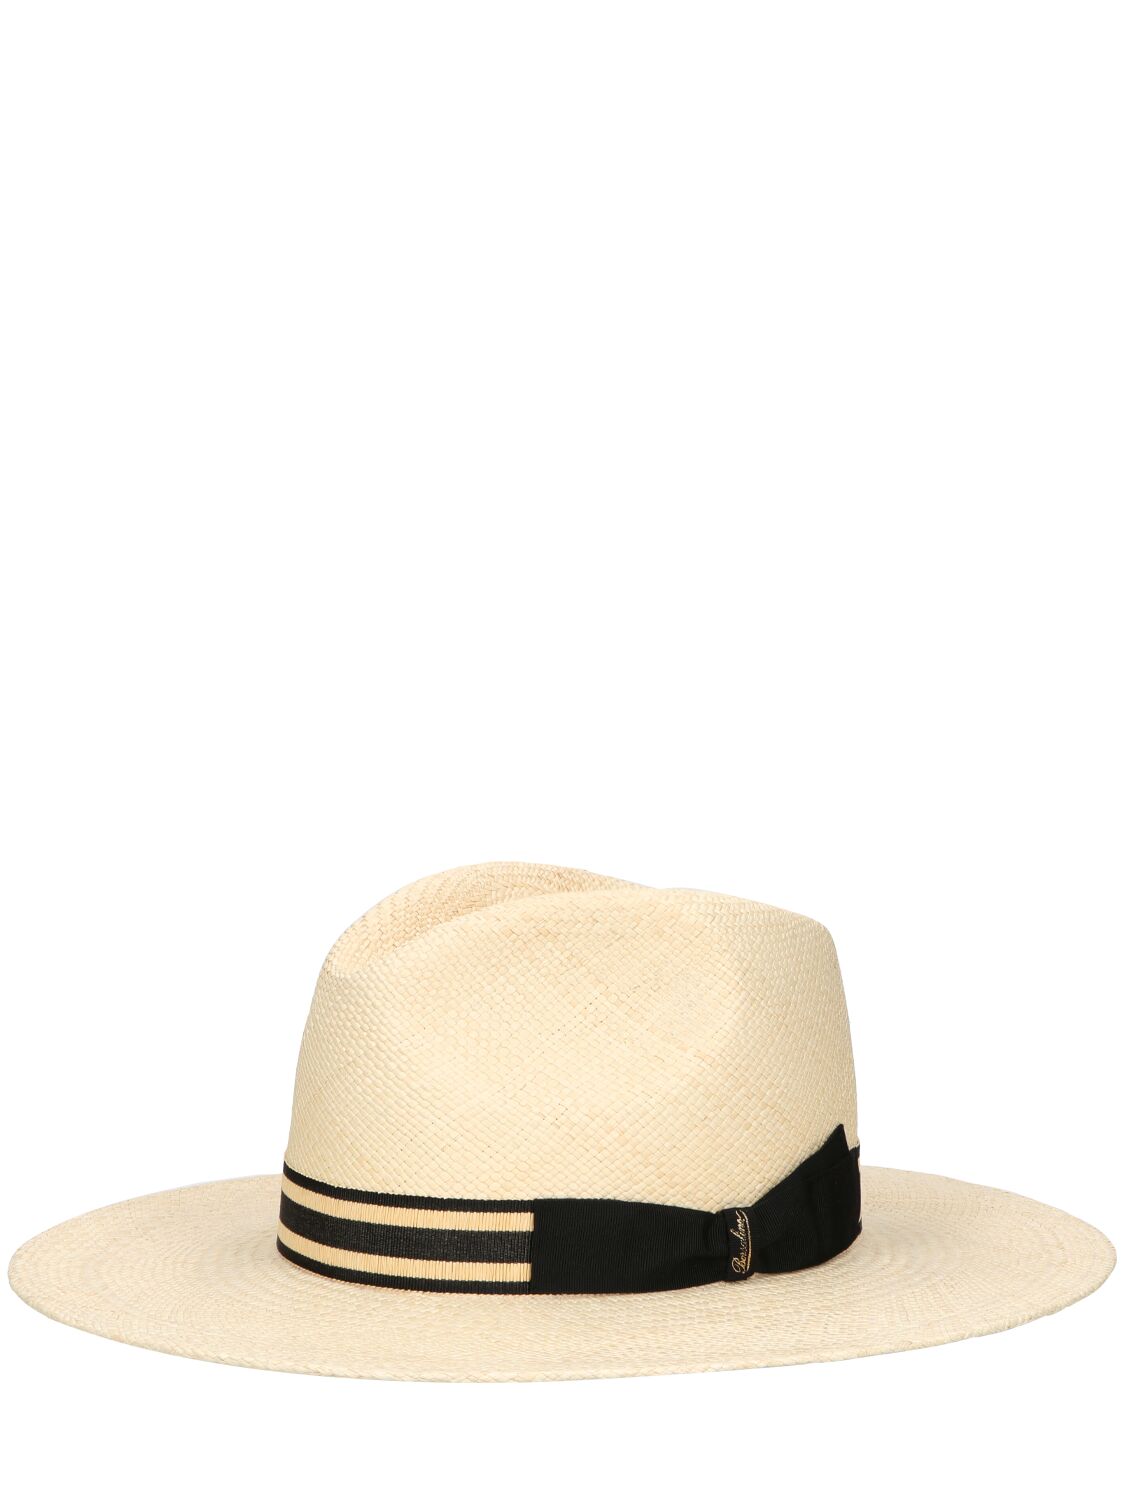 Borsalino Andrea Raffia Straw Panama Hat In Naturale